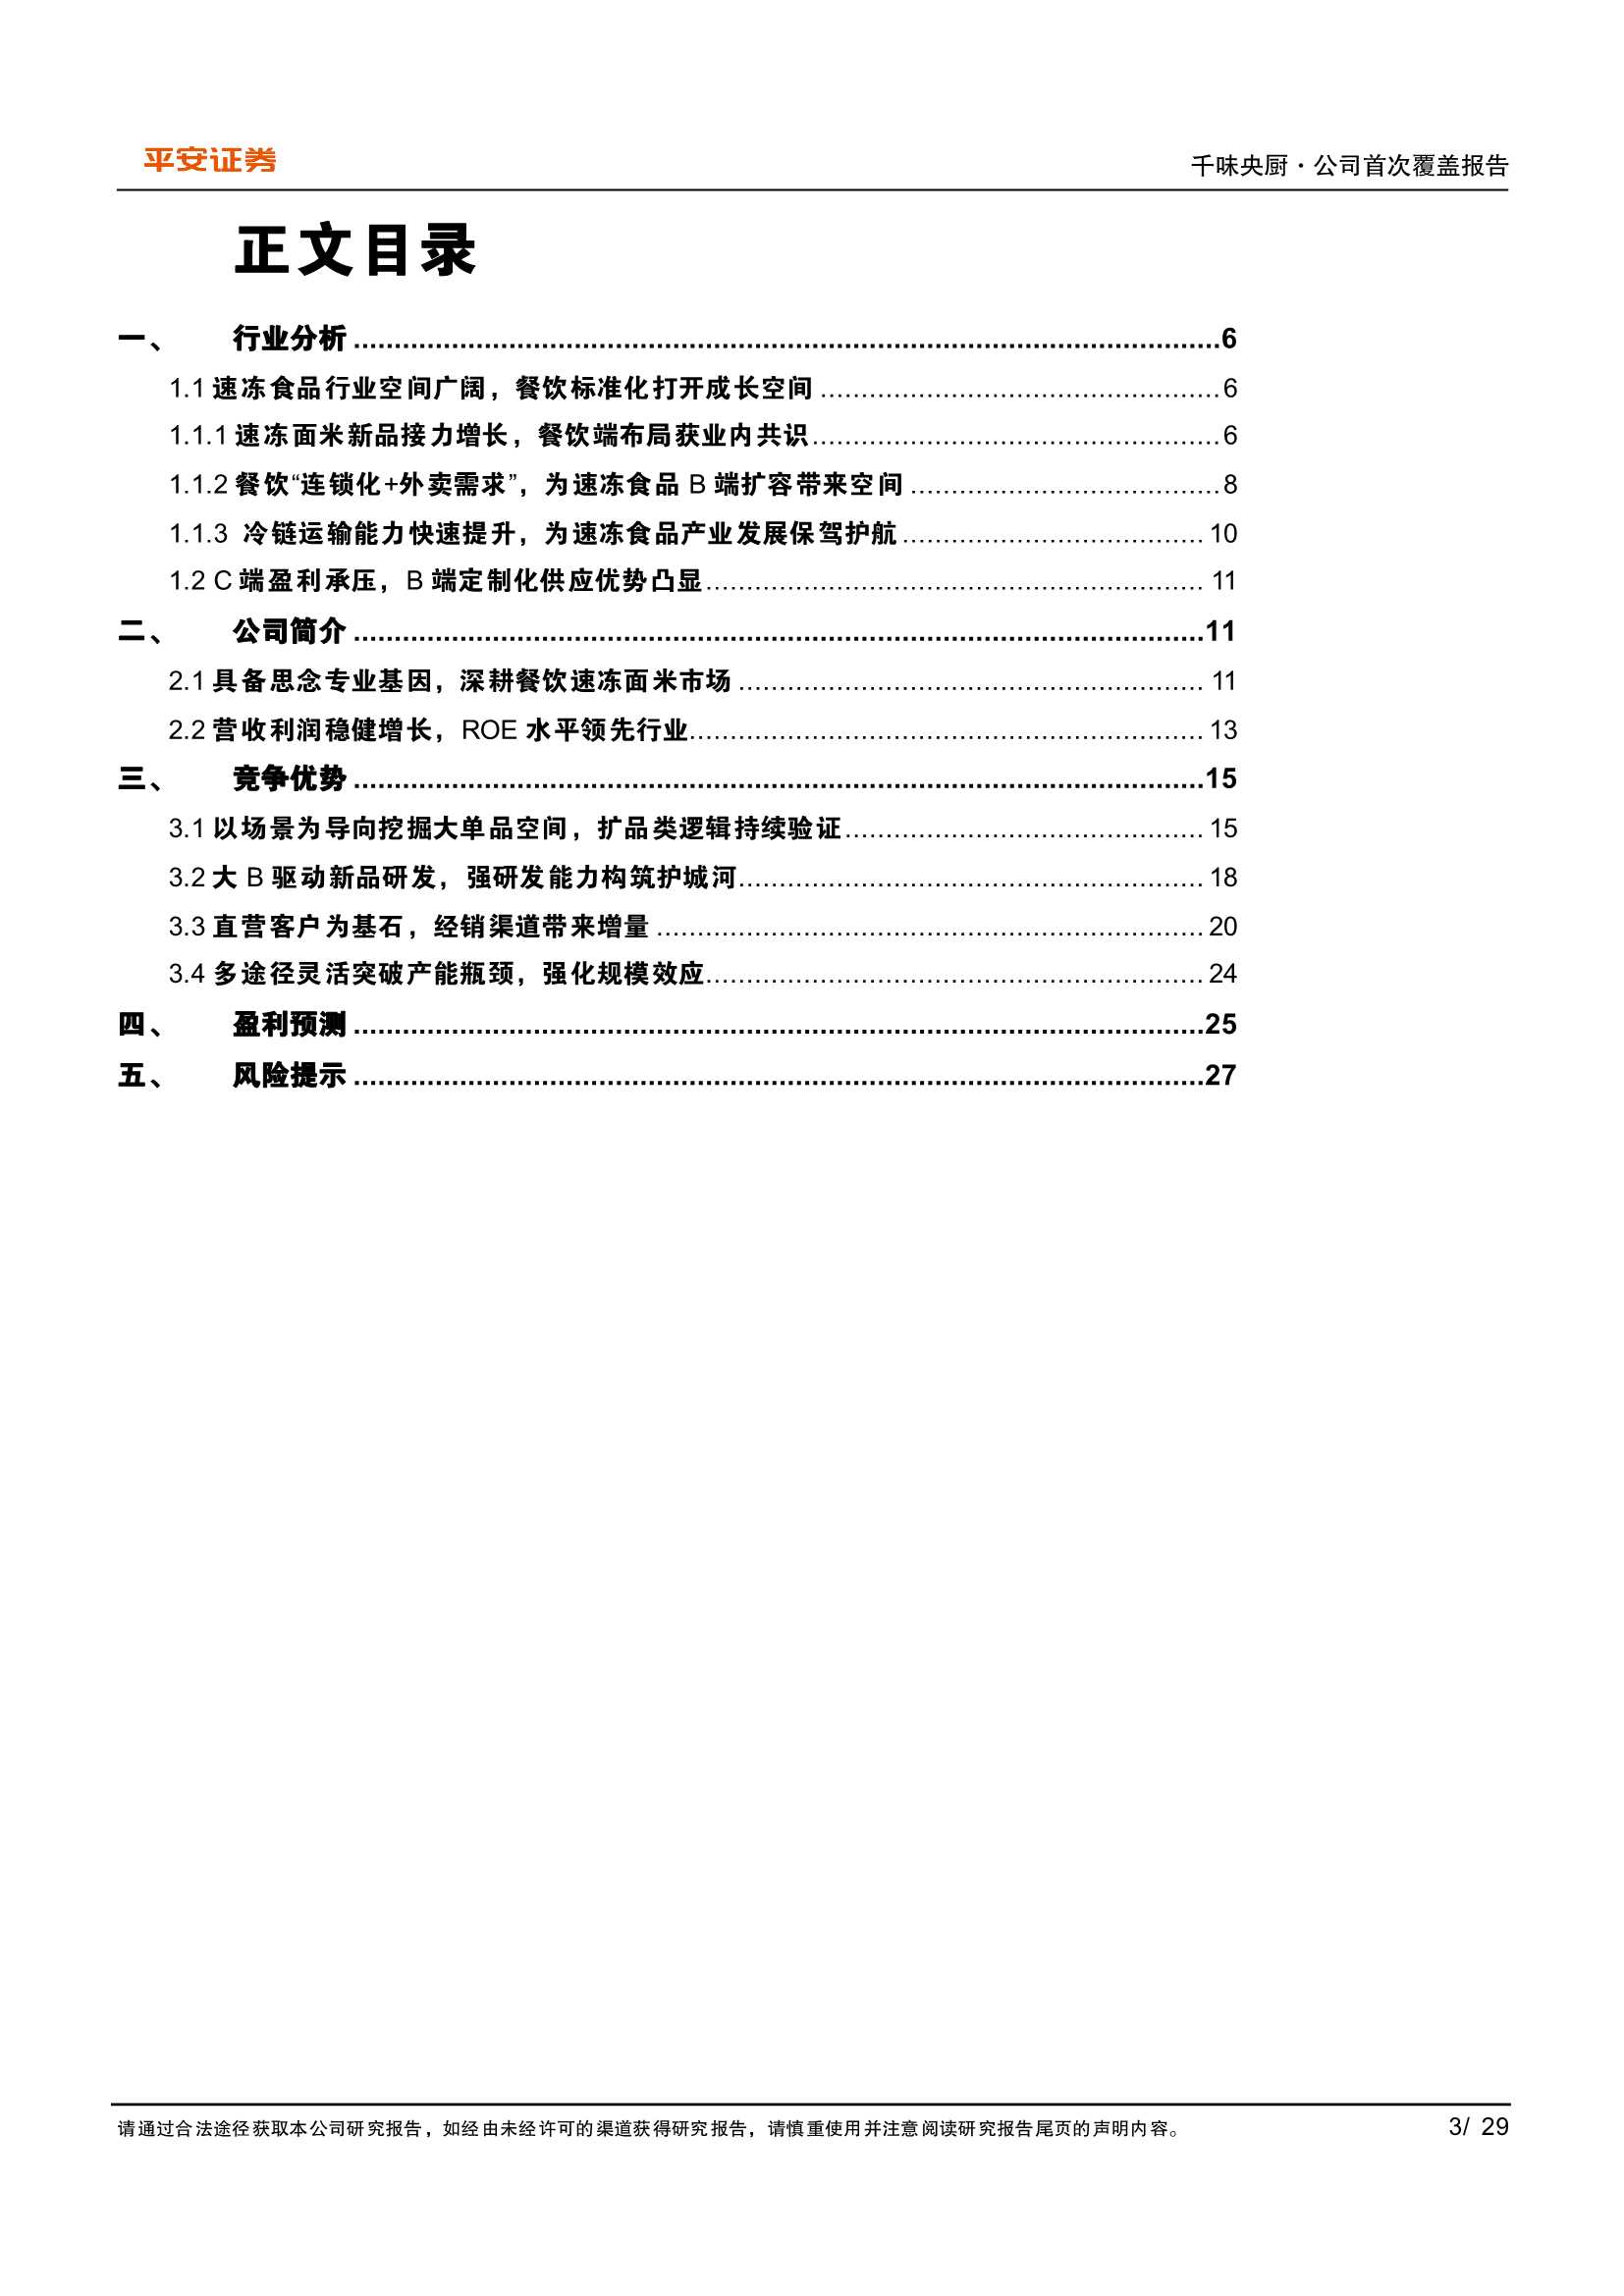 千味央厨-001215-兼具确定性与成长性的速冻面米制品B端龙头-20220427-平安证券-29页